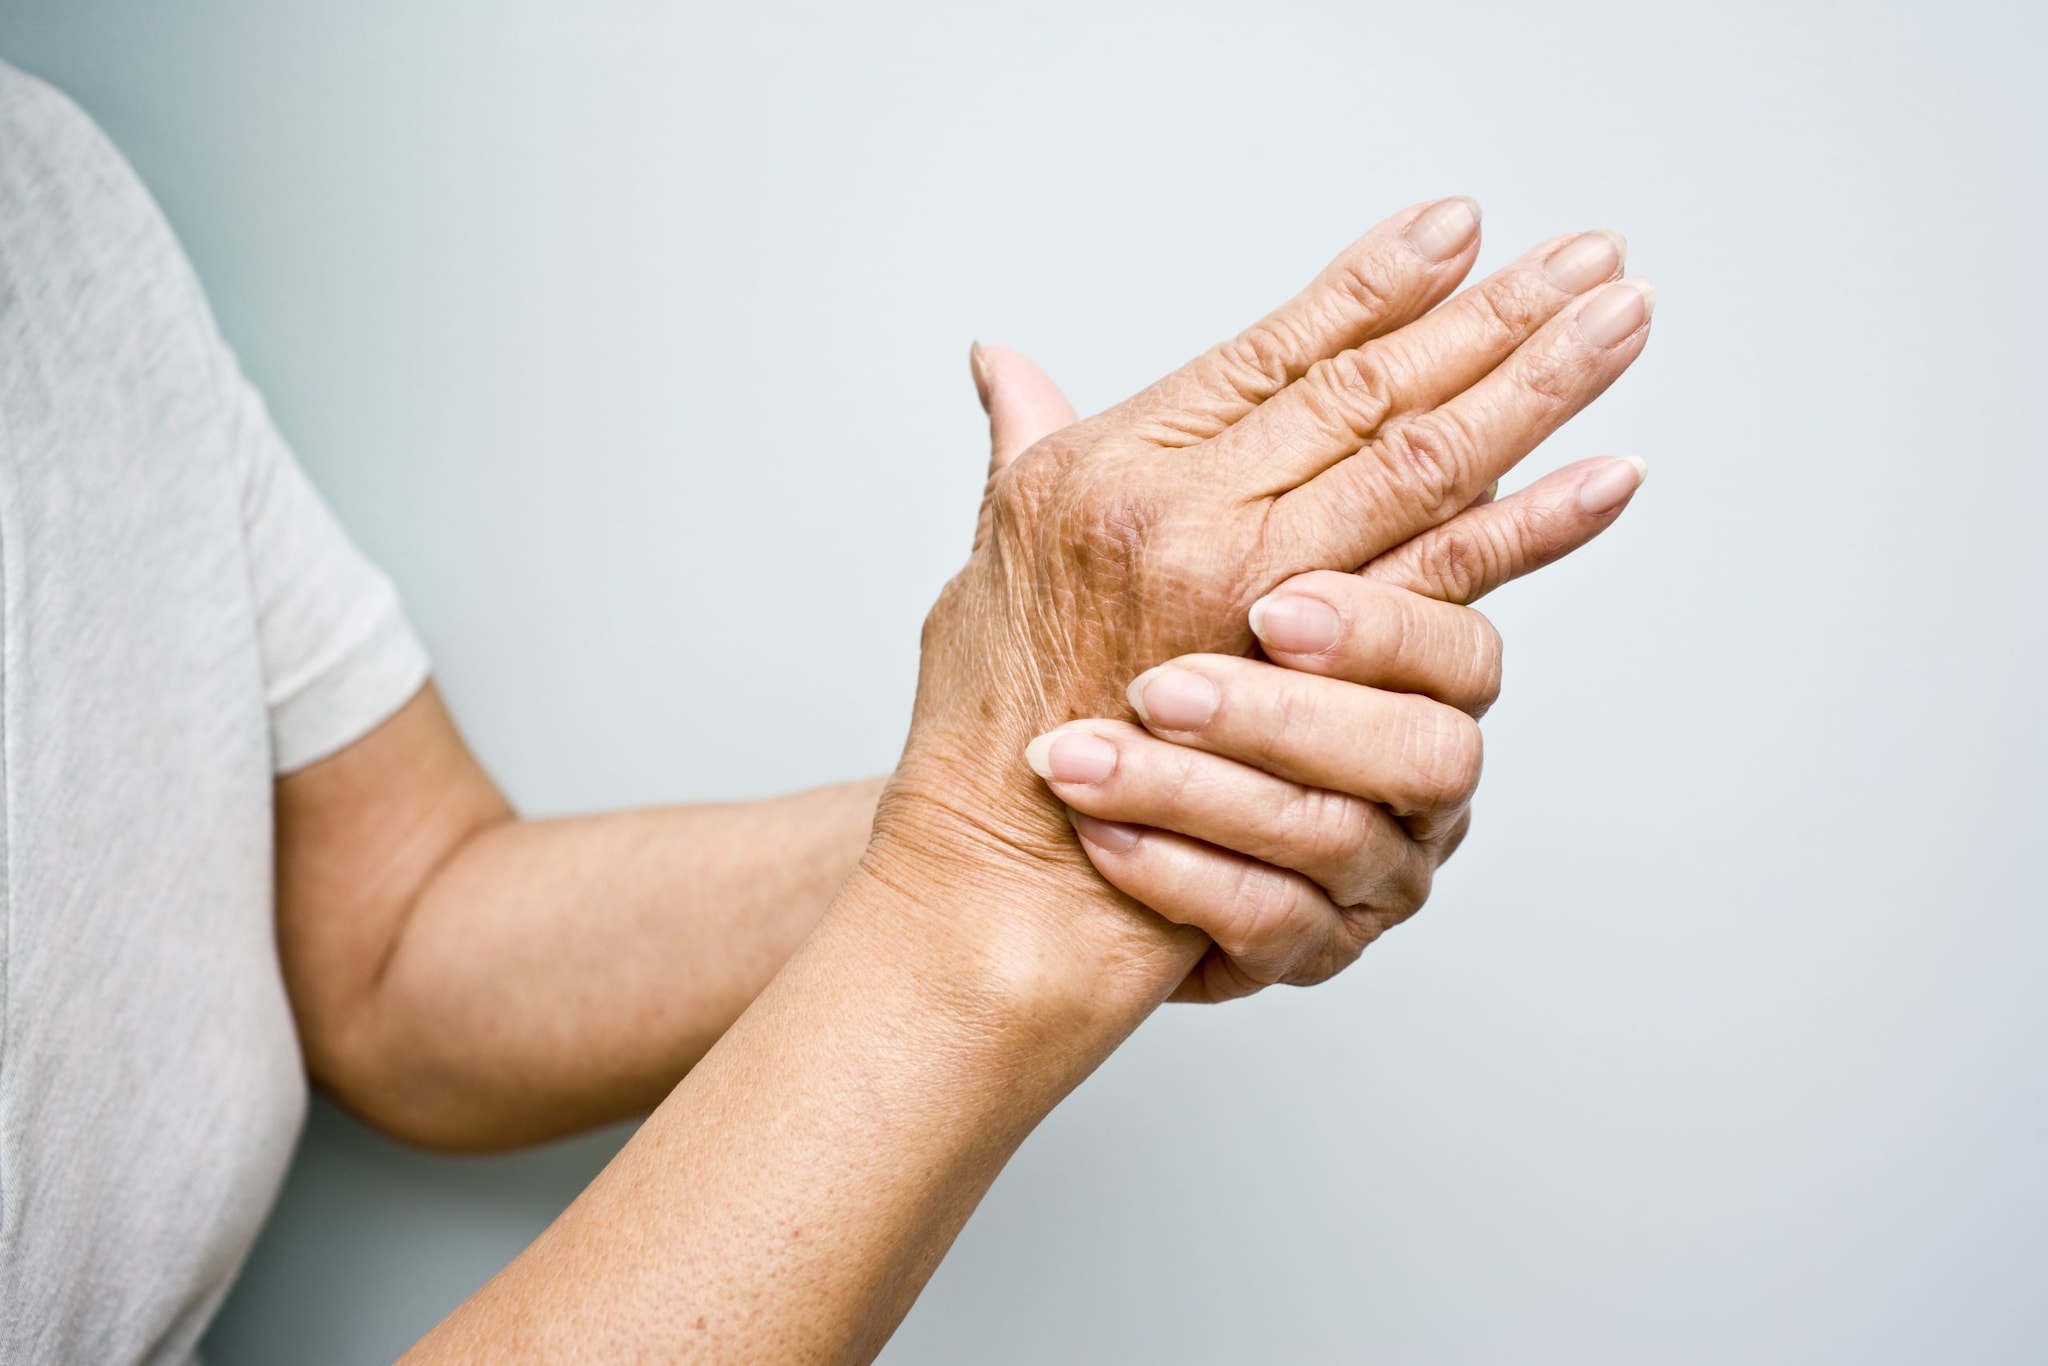 https://www.cdc.gov/arthritis/images/basics/Arthritis_hands.jpg?_=35178